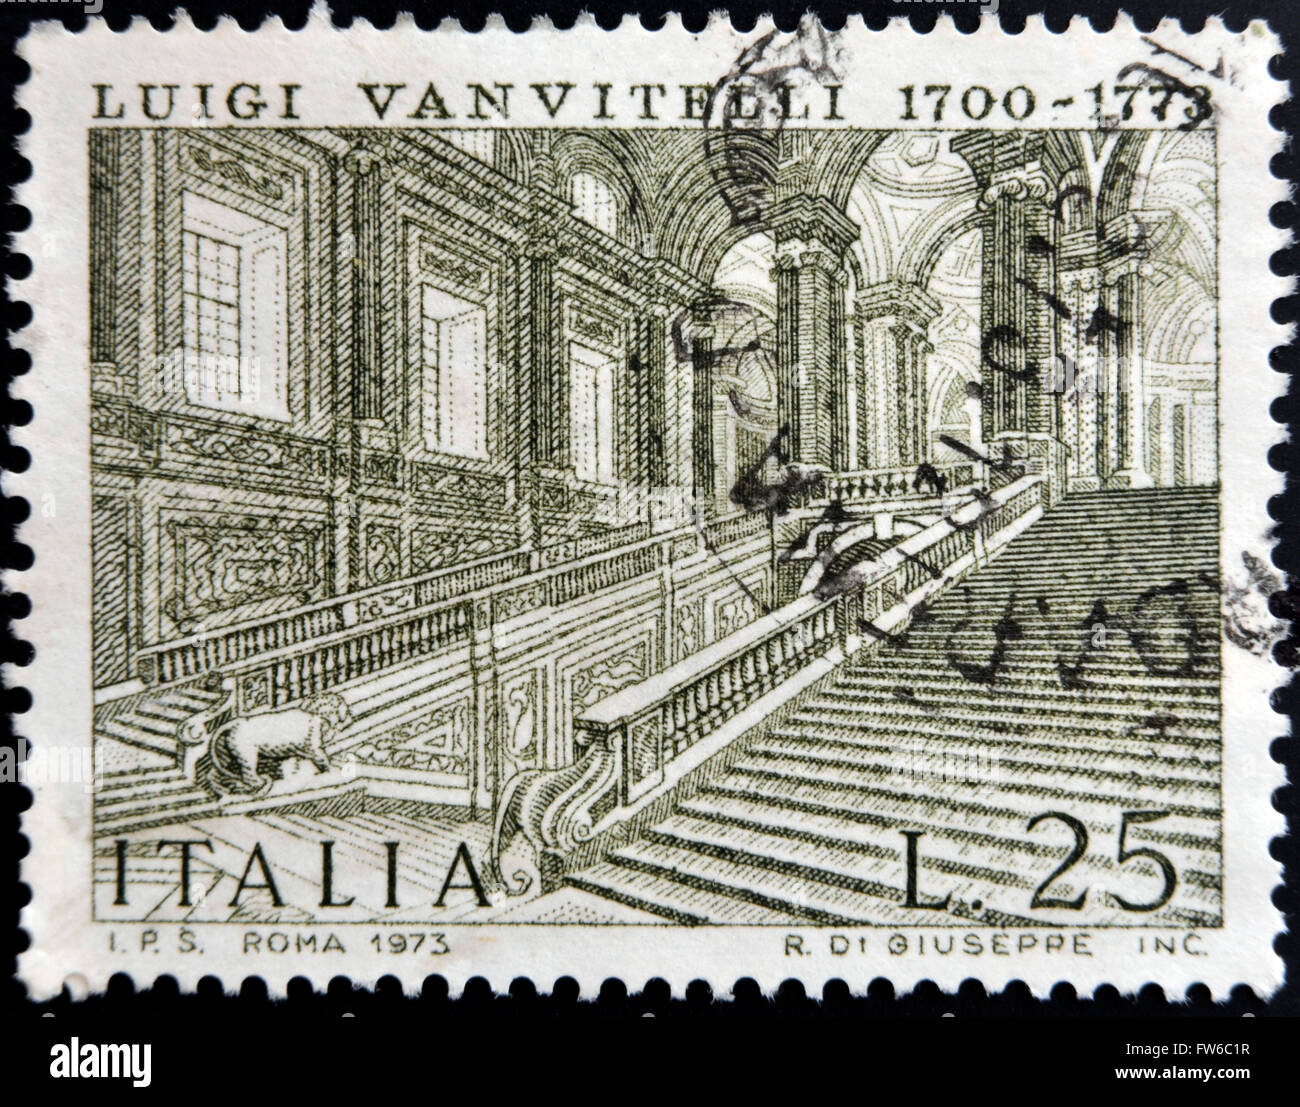 Italien - CIRCA 1973: Eine Briefmarke gedruckt in Italien zeigt Caserta Königspalast von Luigi Vanvitelli, ca. 1973 Stockfoto